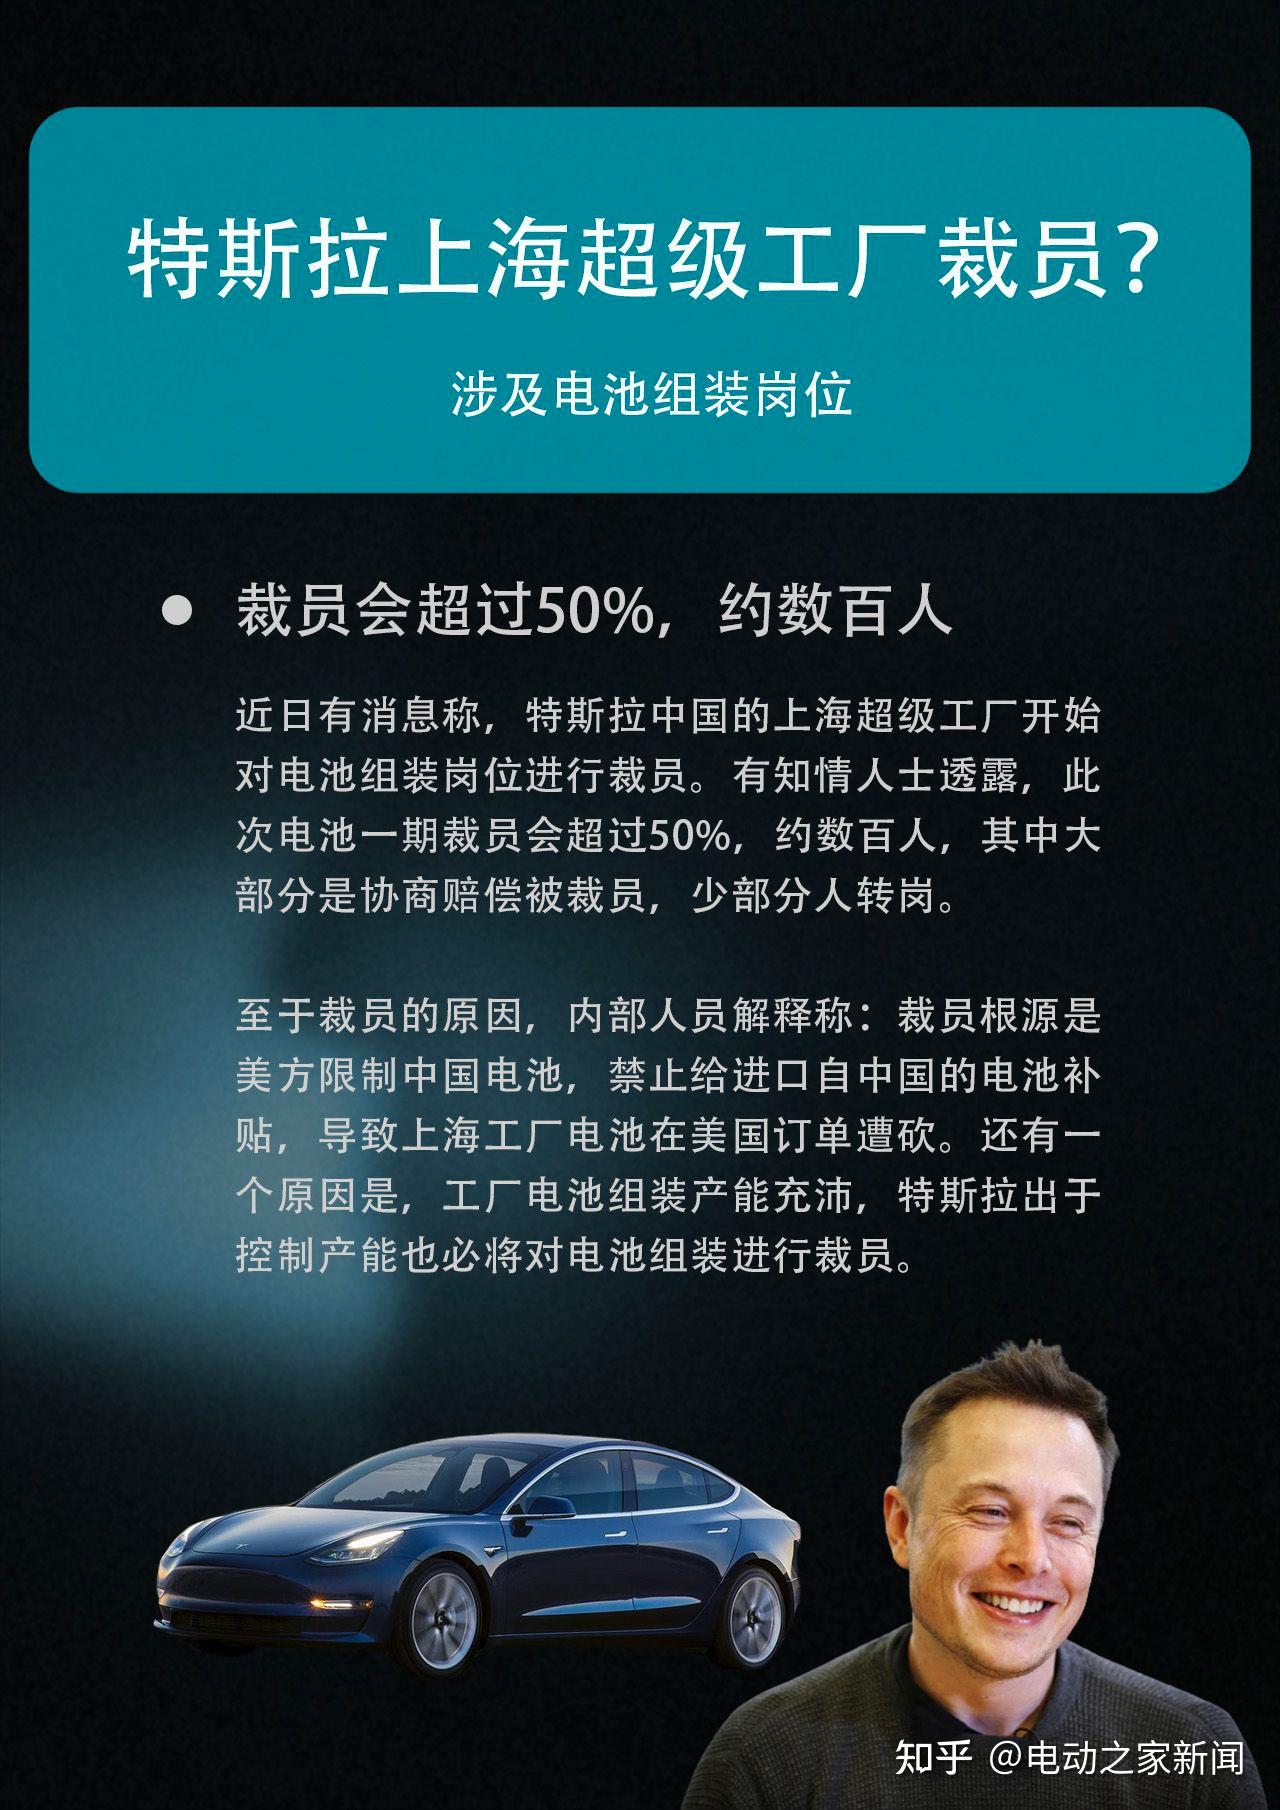 【聚焦】 特斯拉遇多事之秋：裁员7%、累计召回20万车辆 停产低价车型_搜狐汽车_搜狐网